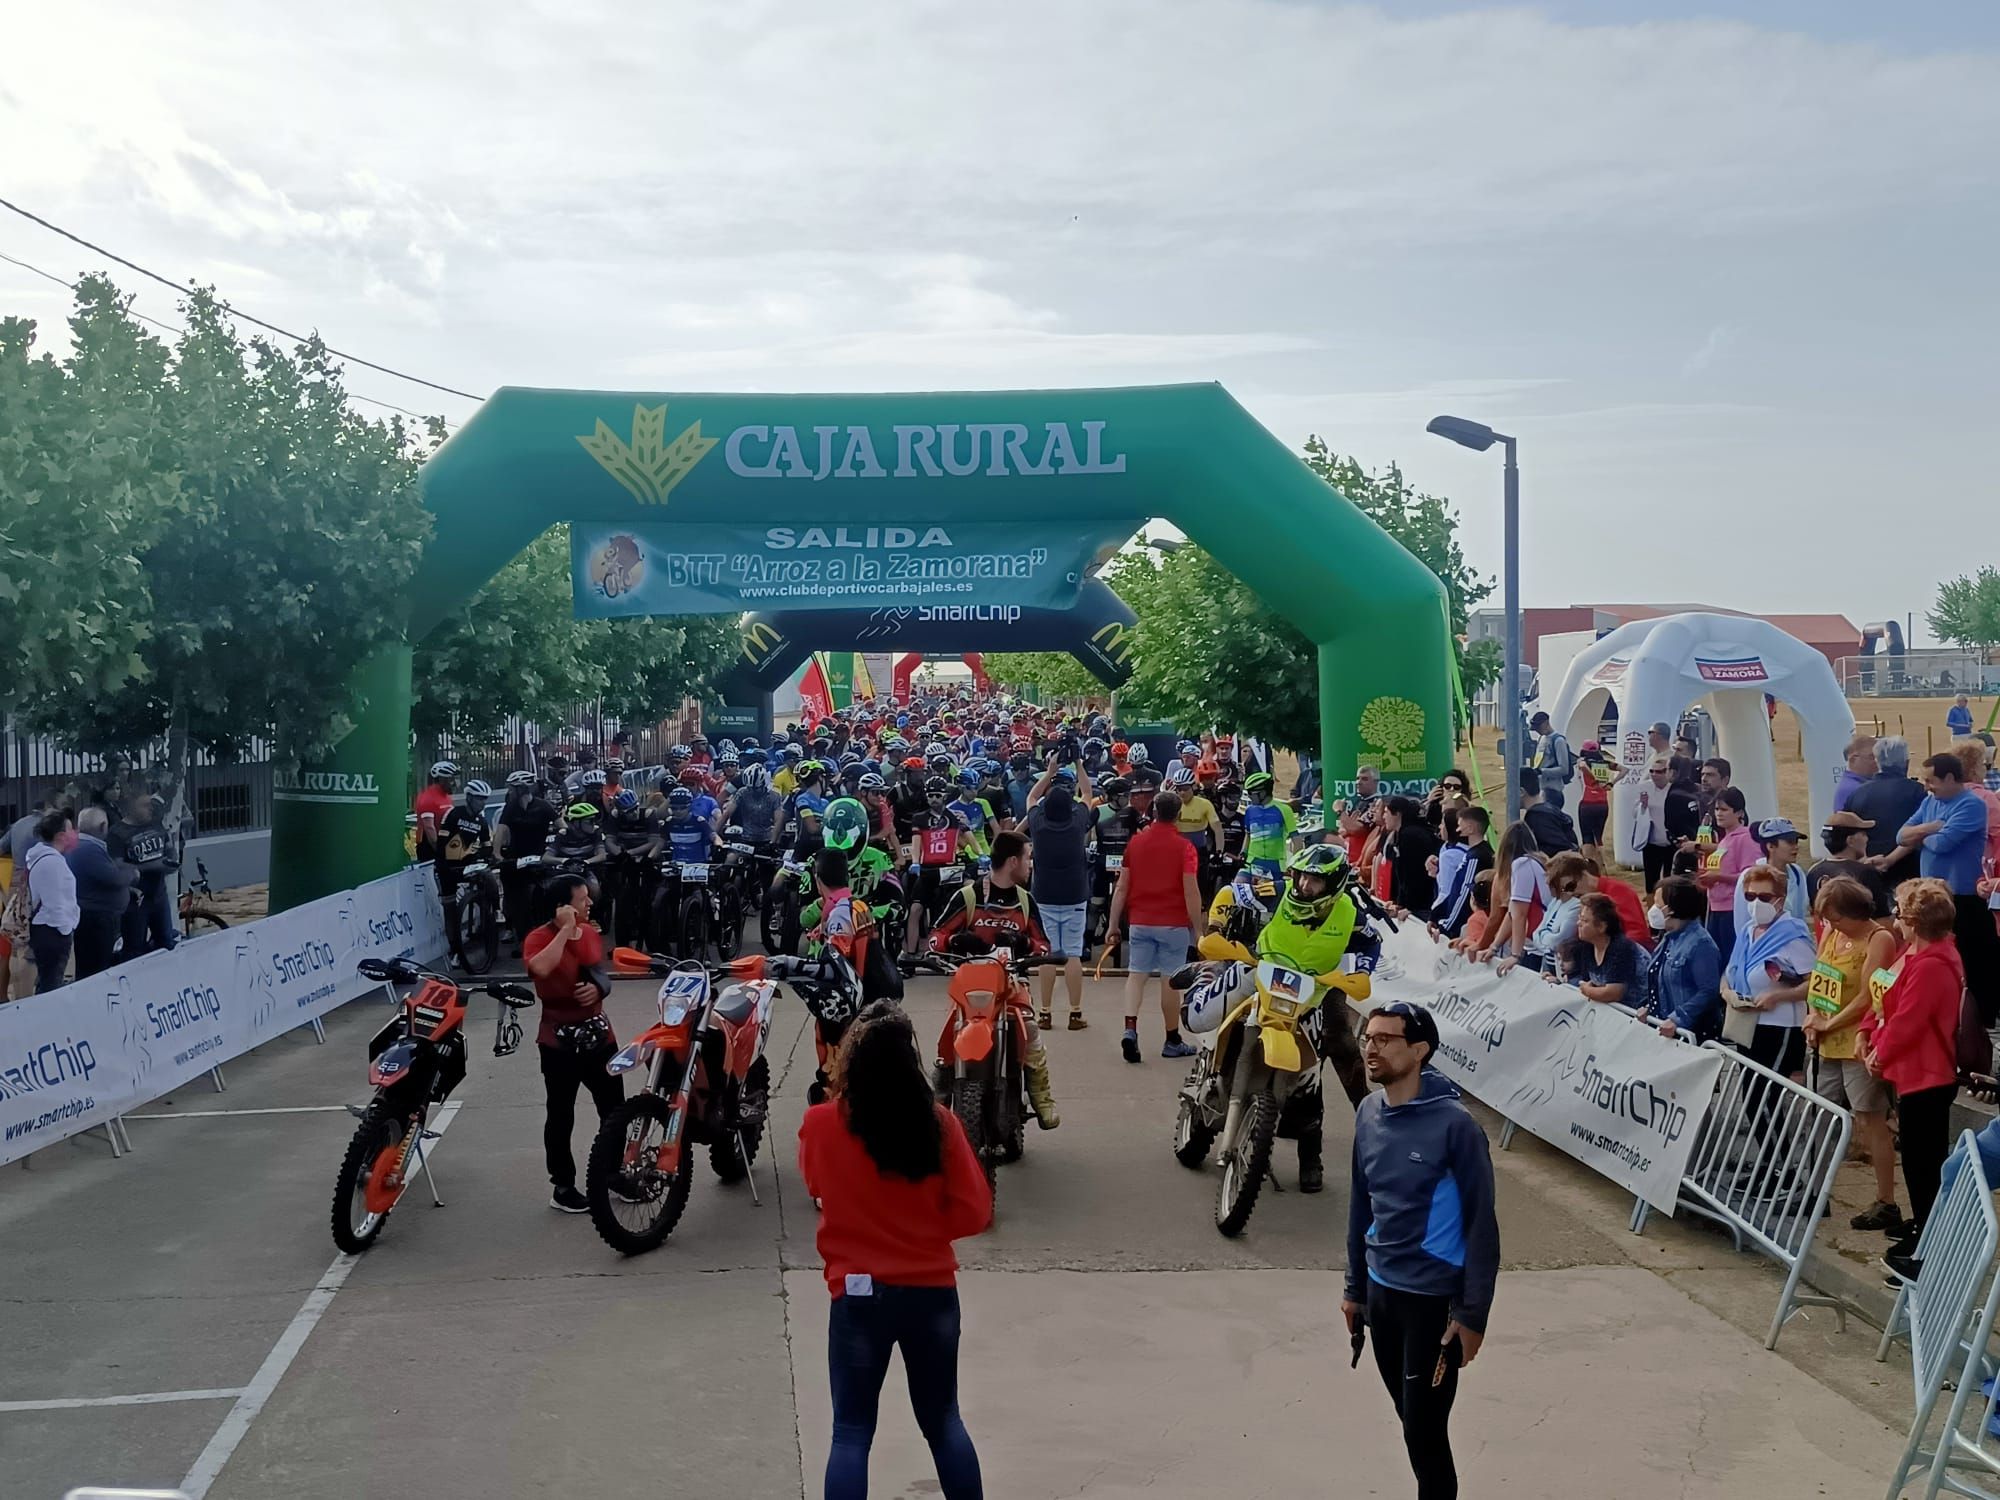 GALERÍA | La Ruta BTT Arroz a la Zamorana, la fiesta de la bici en Carbajales de Alba